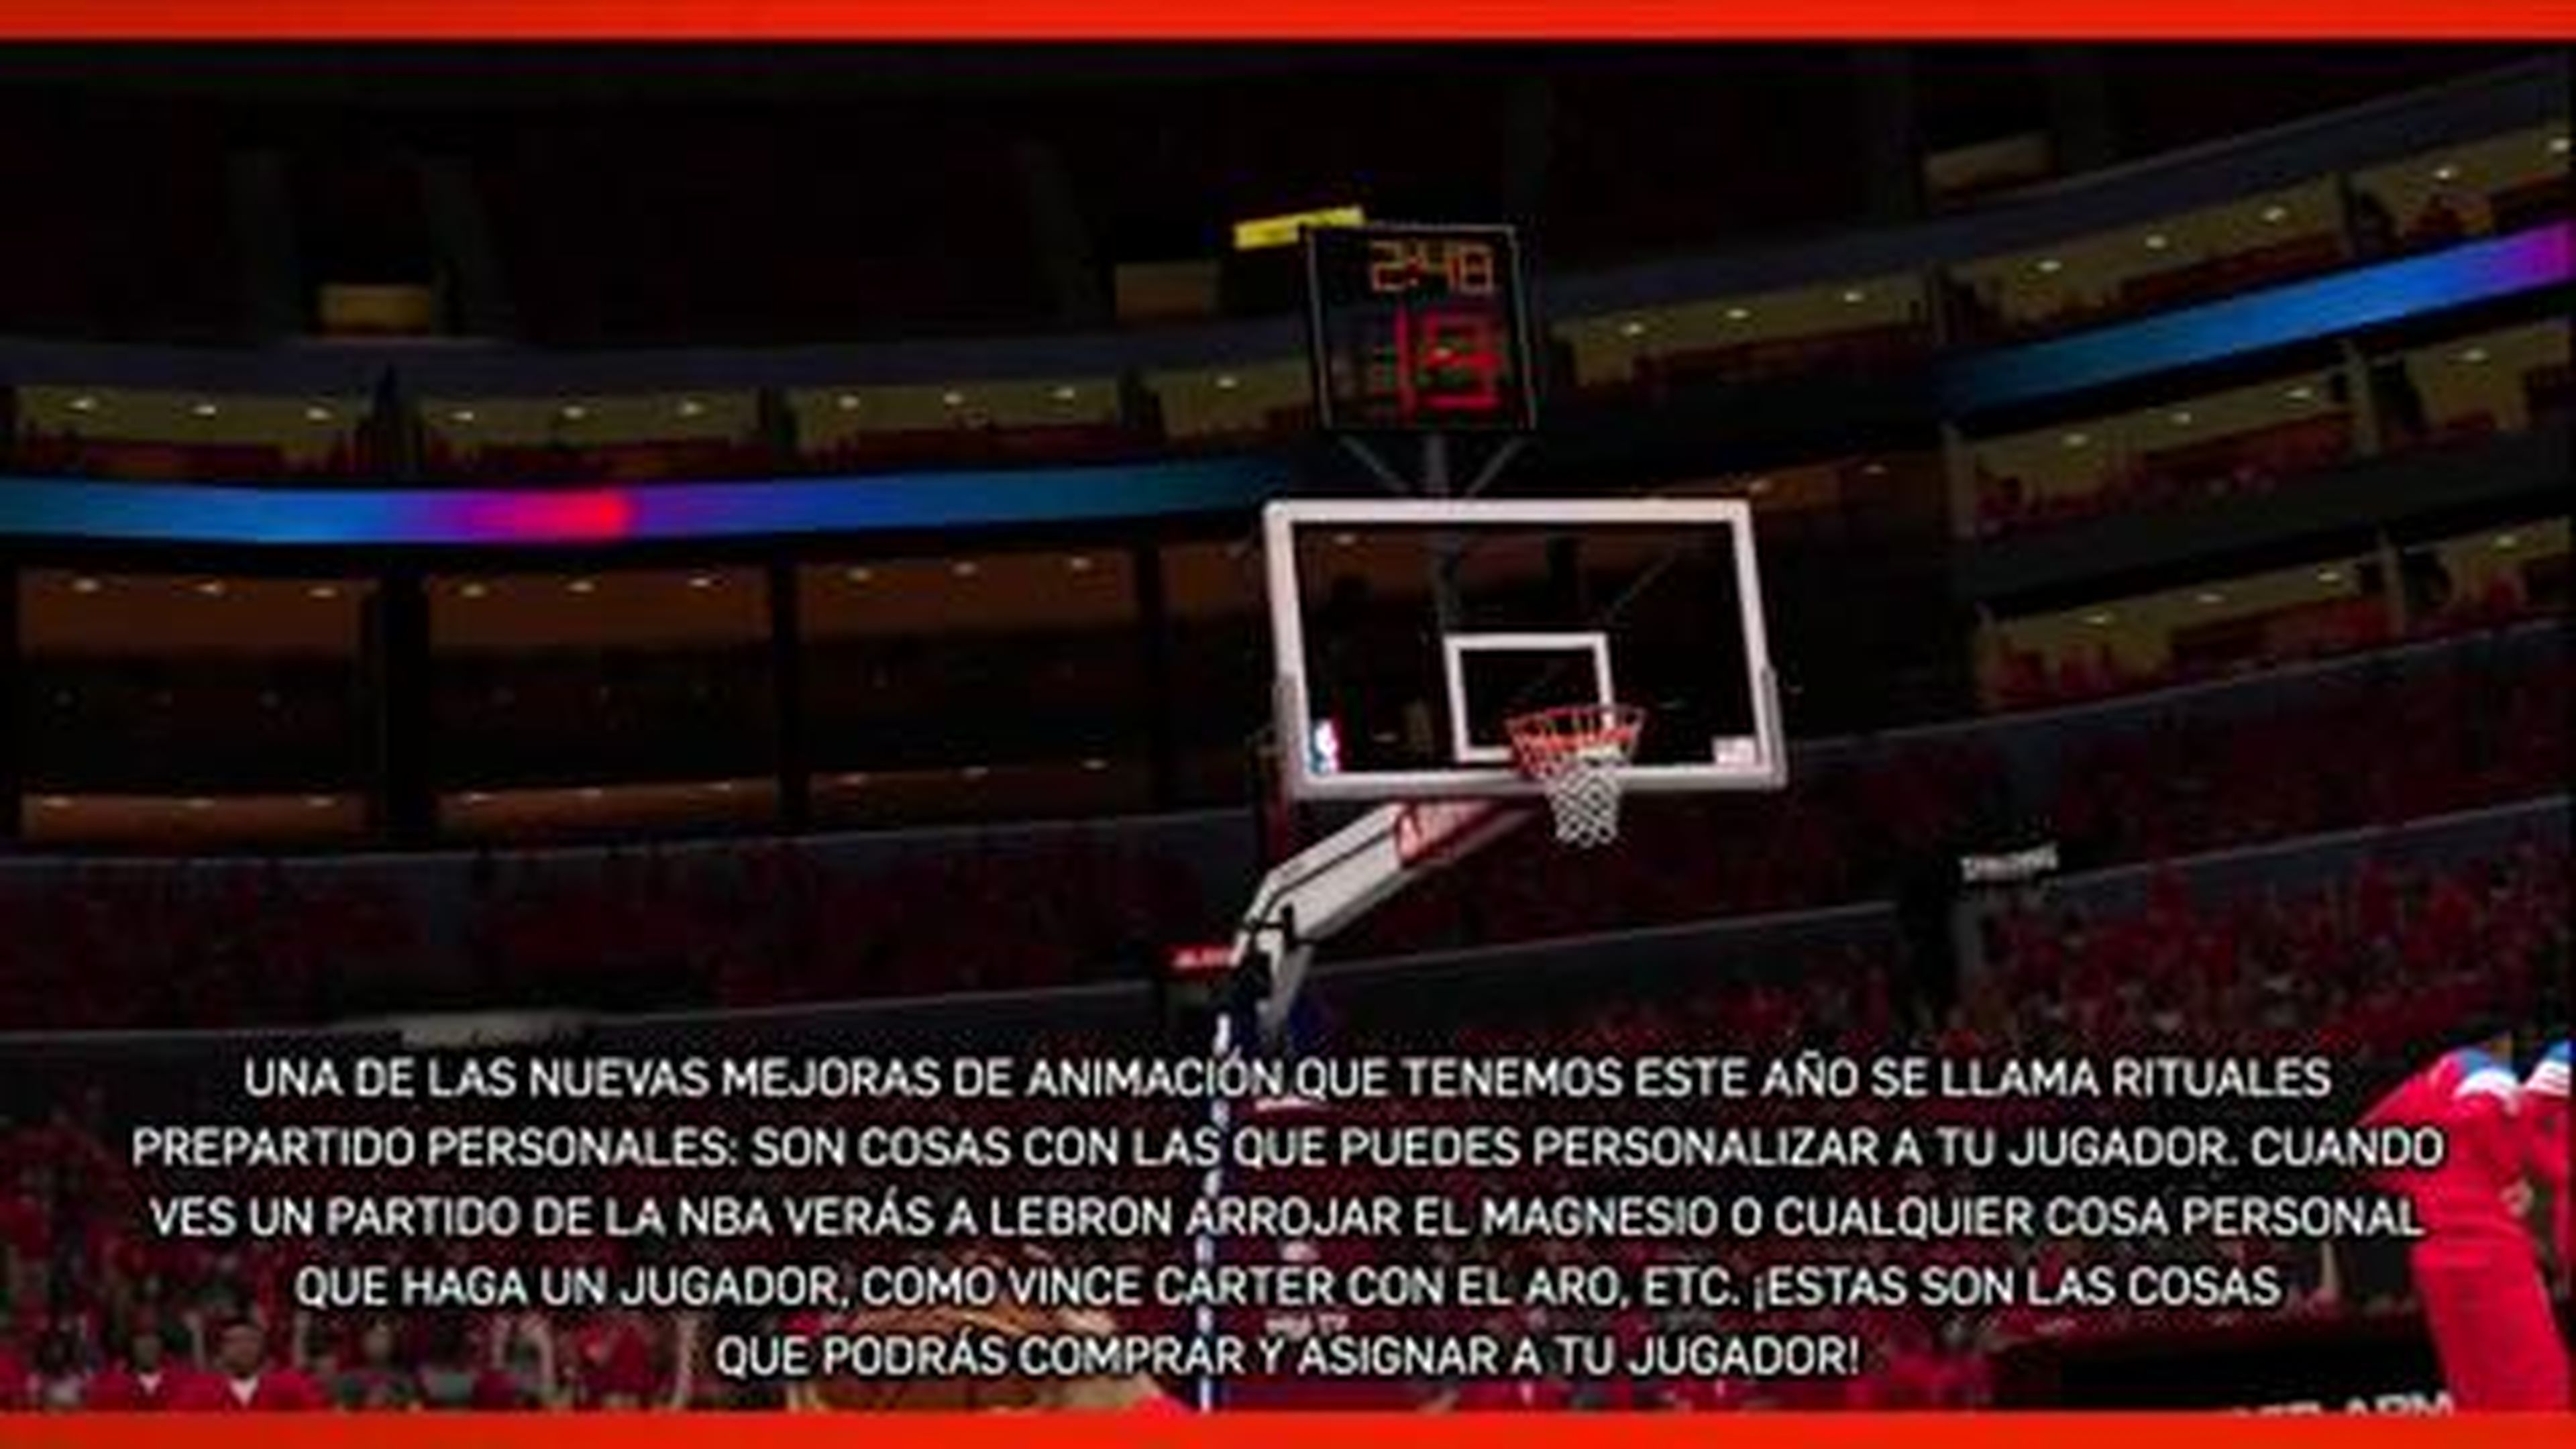 El modo Carrera de NBA 2K13 en HobbyConsolas.com